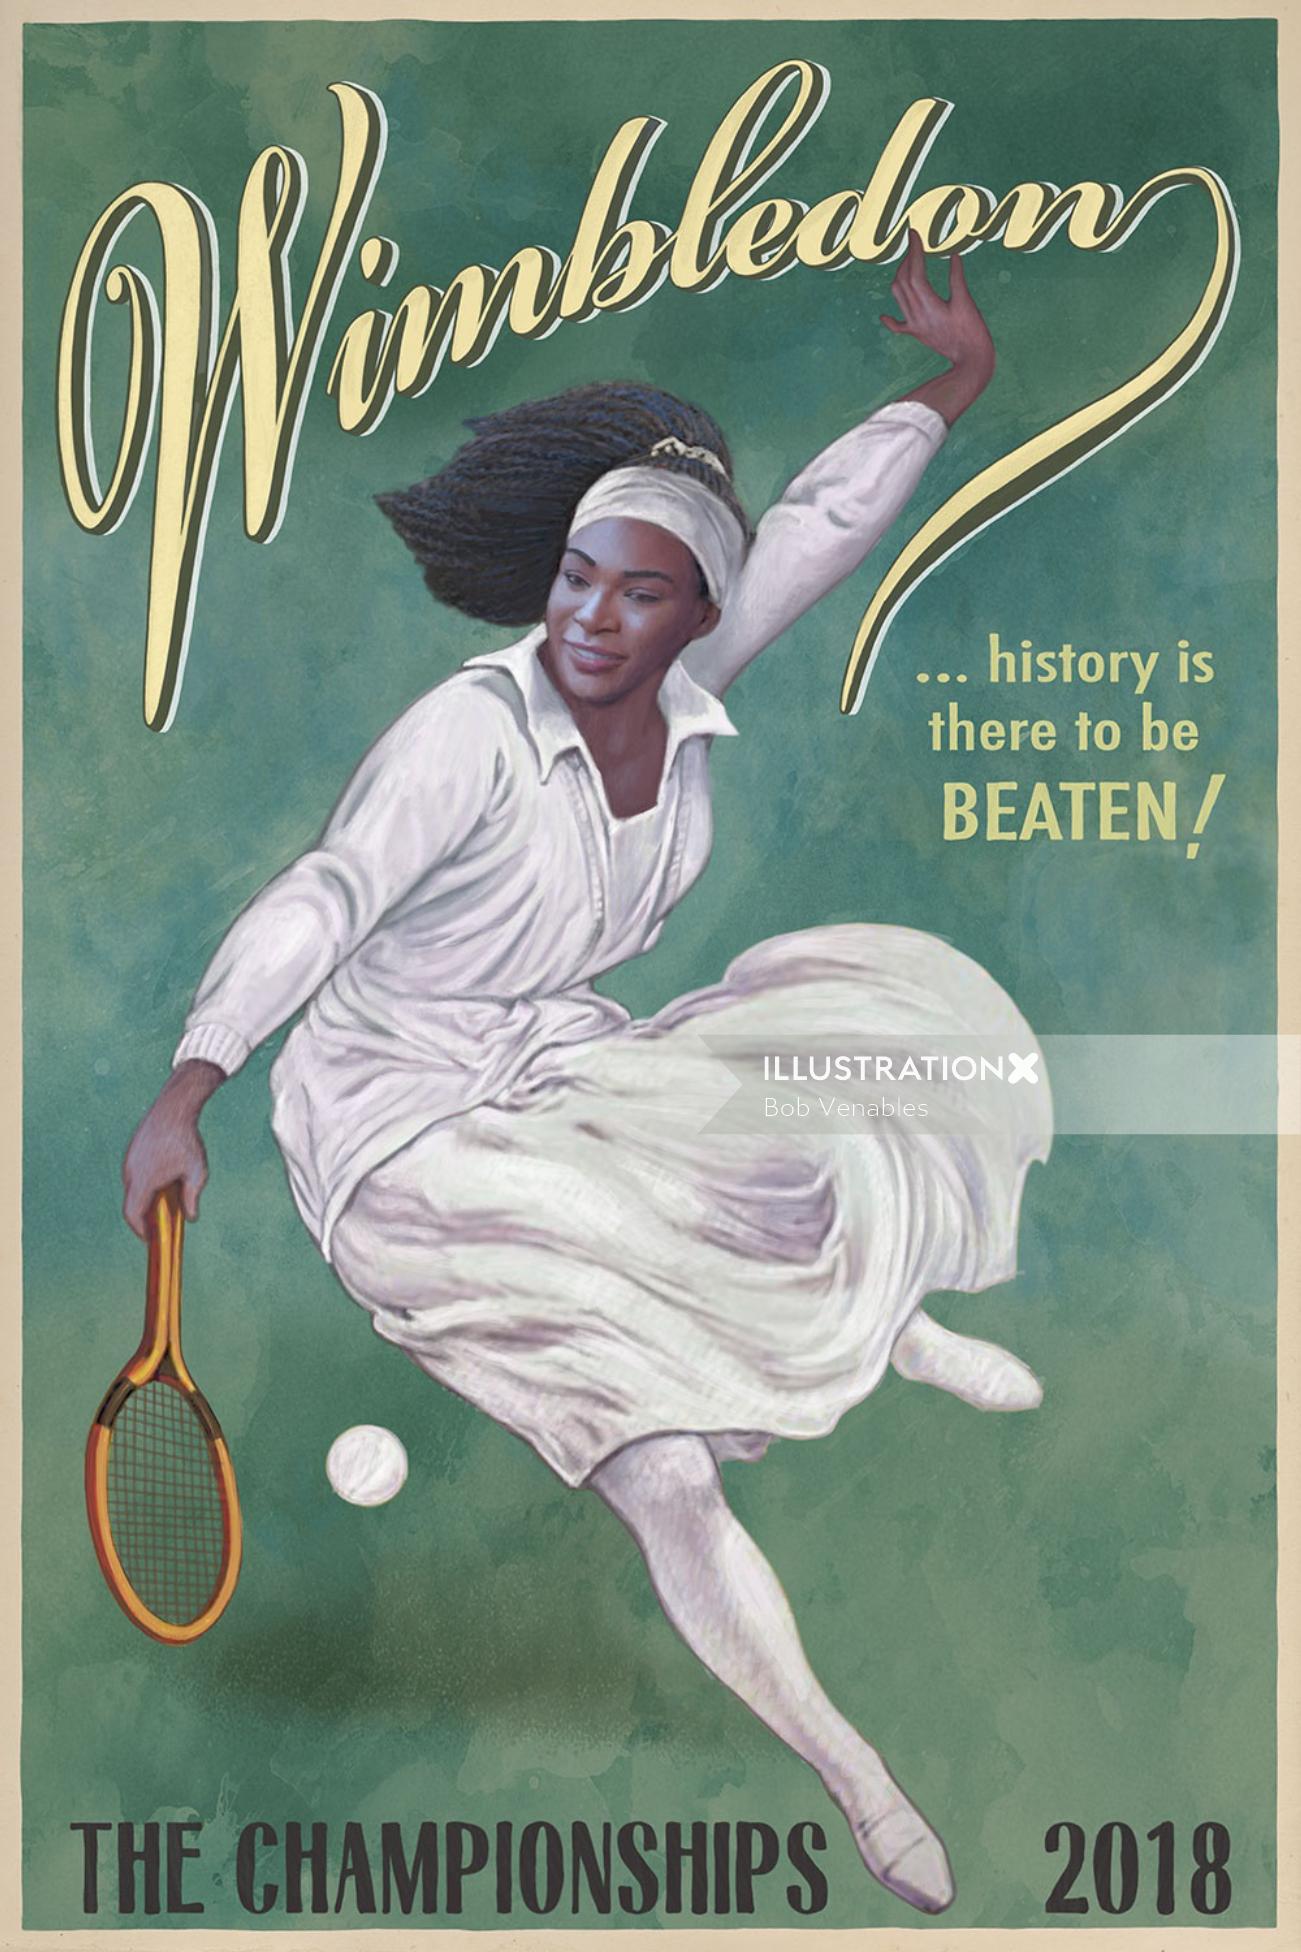 Affiche publicitaire des championnats de tennis de Wimbledon